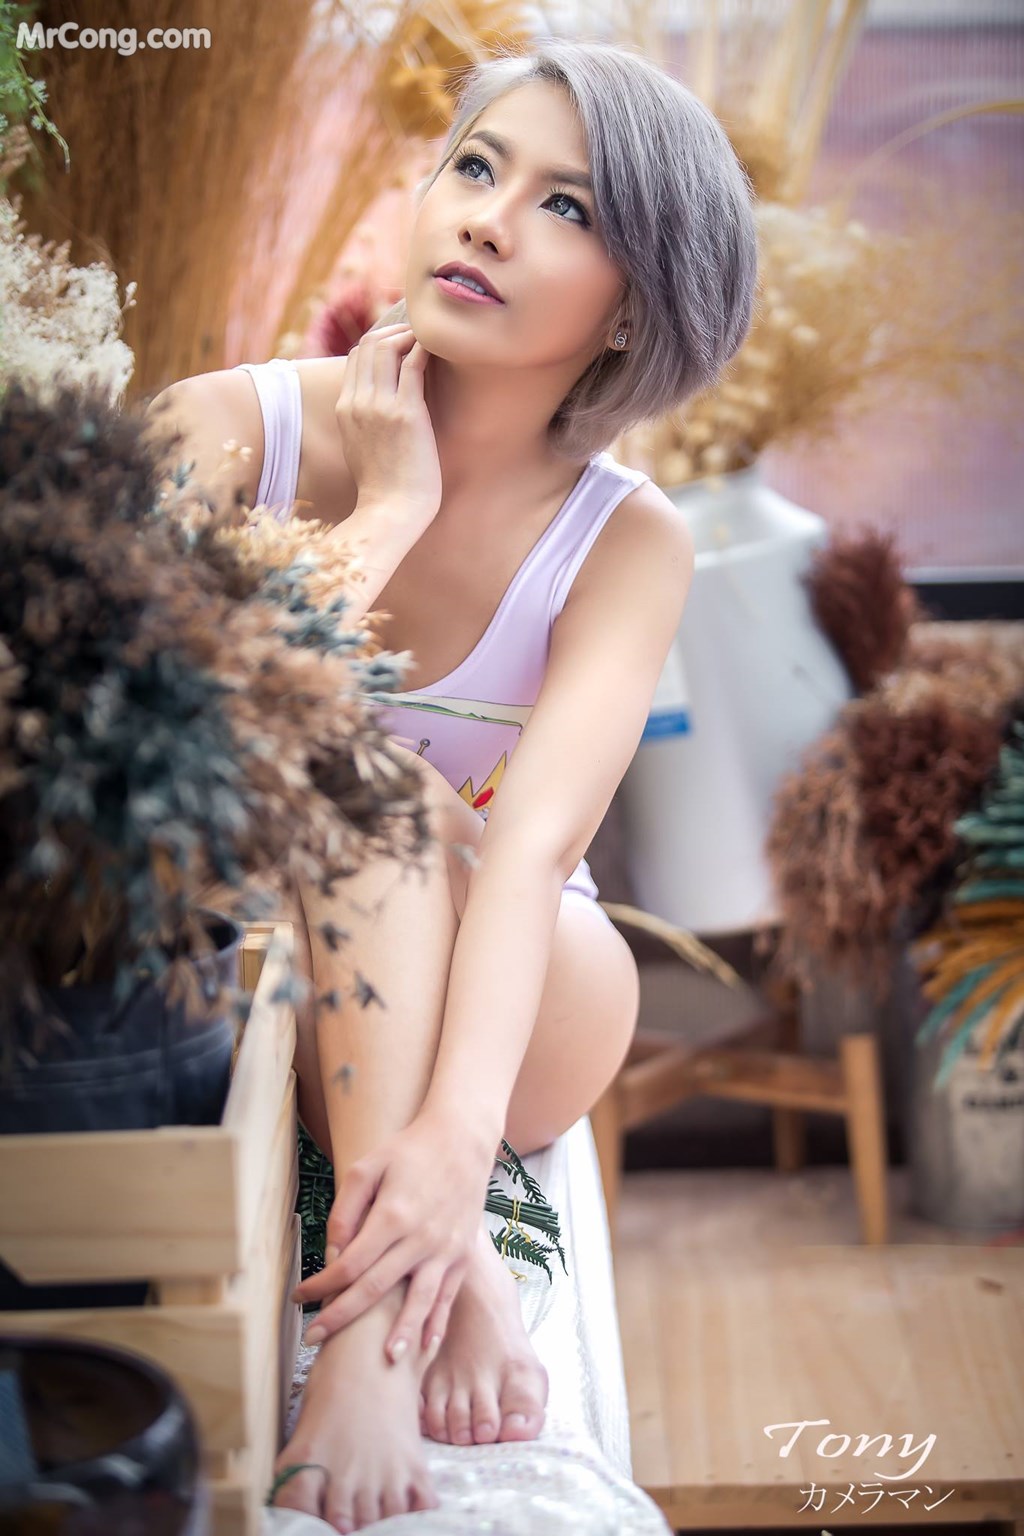 Thai Model No.238: Model Alisa Manathanya (35 photos)